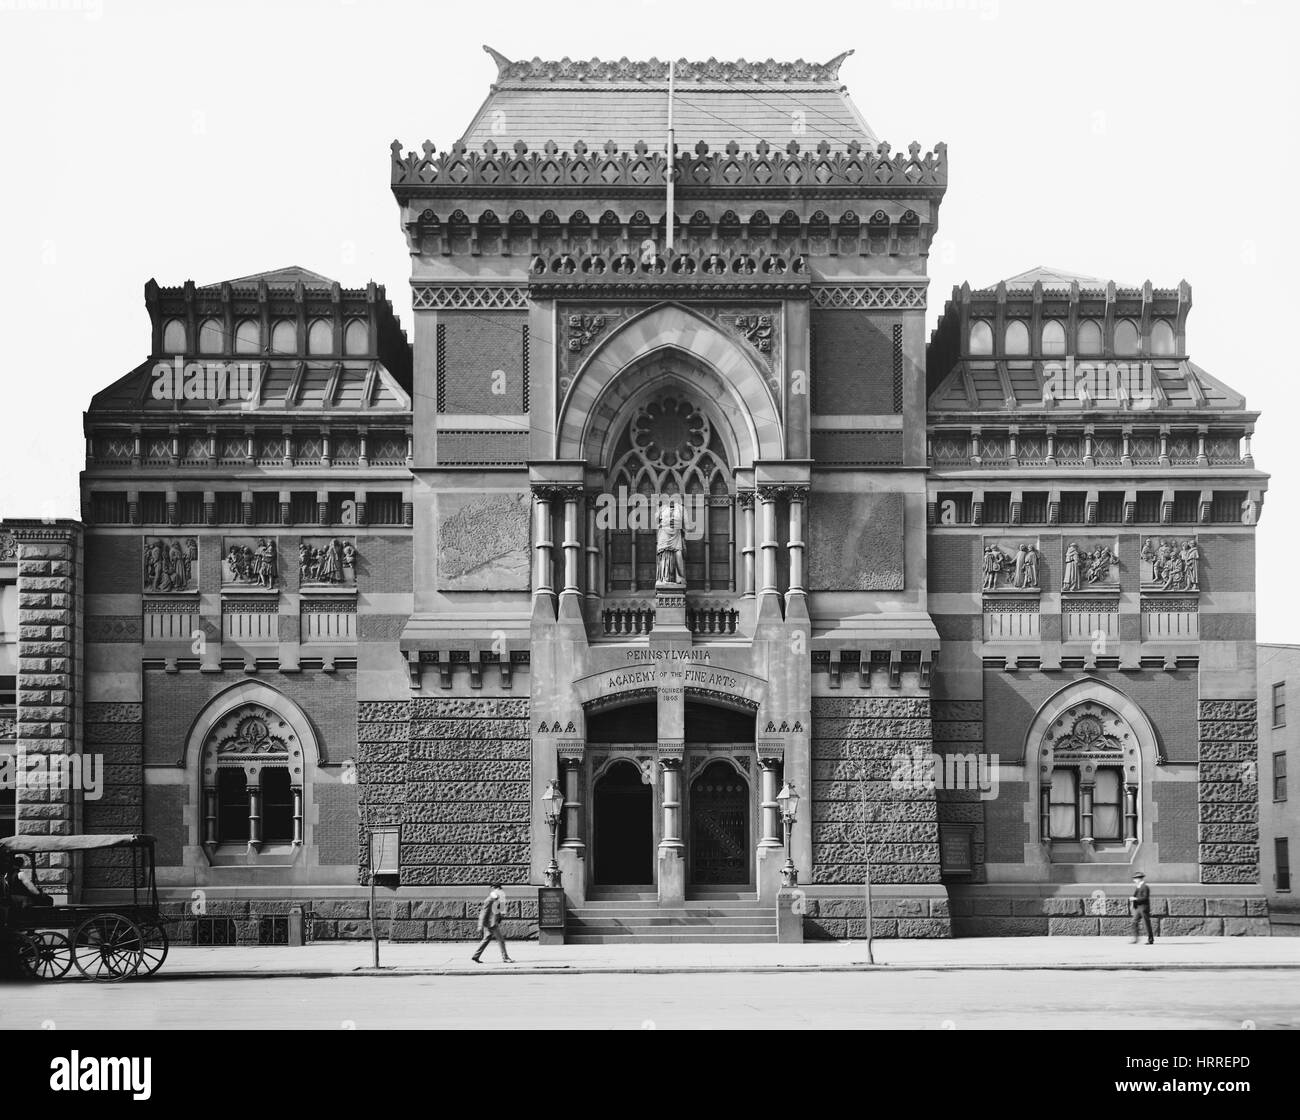 Academia de Bellas Artes de Pensilvania, Filadelfia, Pennsylvania, Estados Unidos, Detroit Publishing Company, 1905 Foto de stock